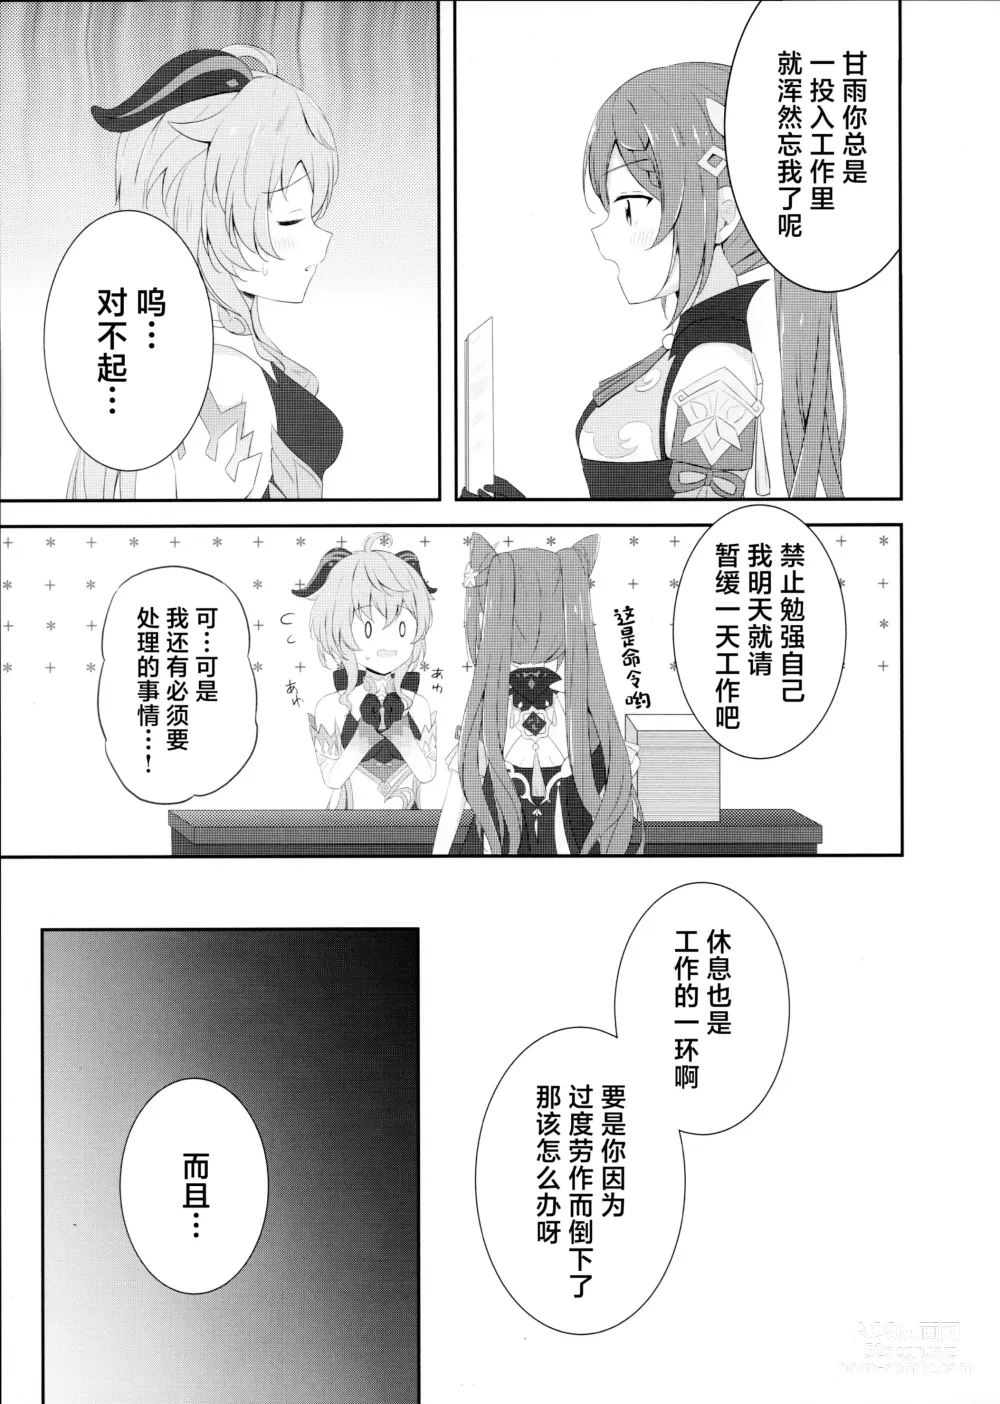 Page 4 of doujinshi KokuKan wa Echi ga Shitai!